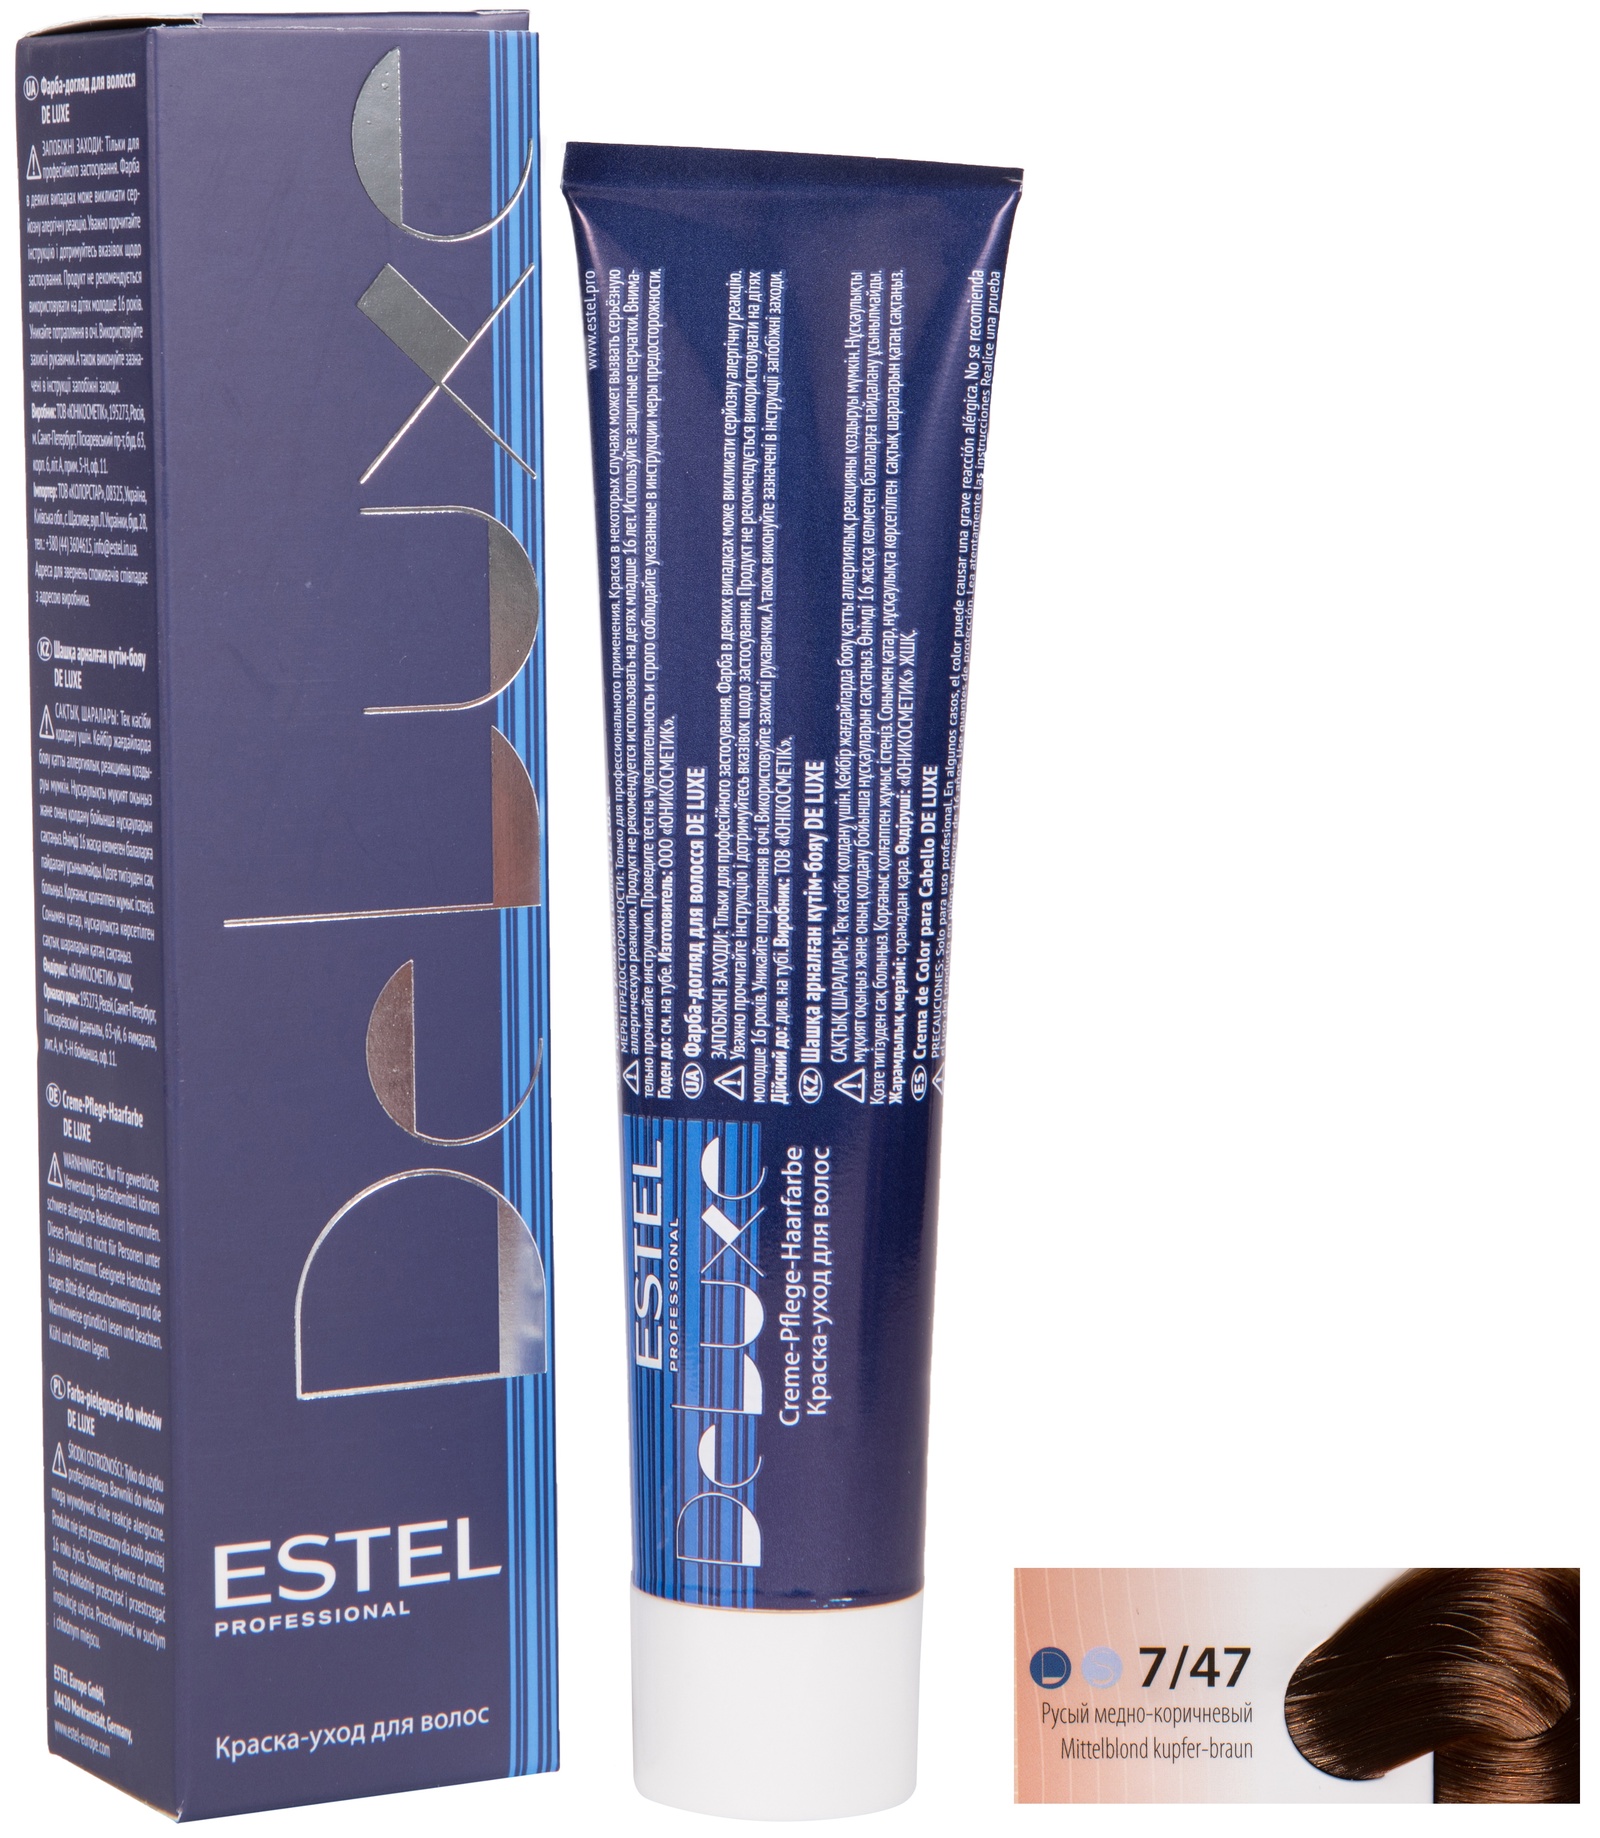 Краска для волос ESTEL PROFESSIONAL 7/47 DE LUXE краска-уход для окрашивания волос, русый медно-коричневый 60 мл